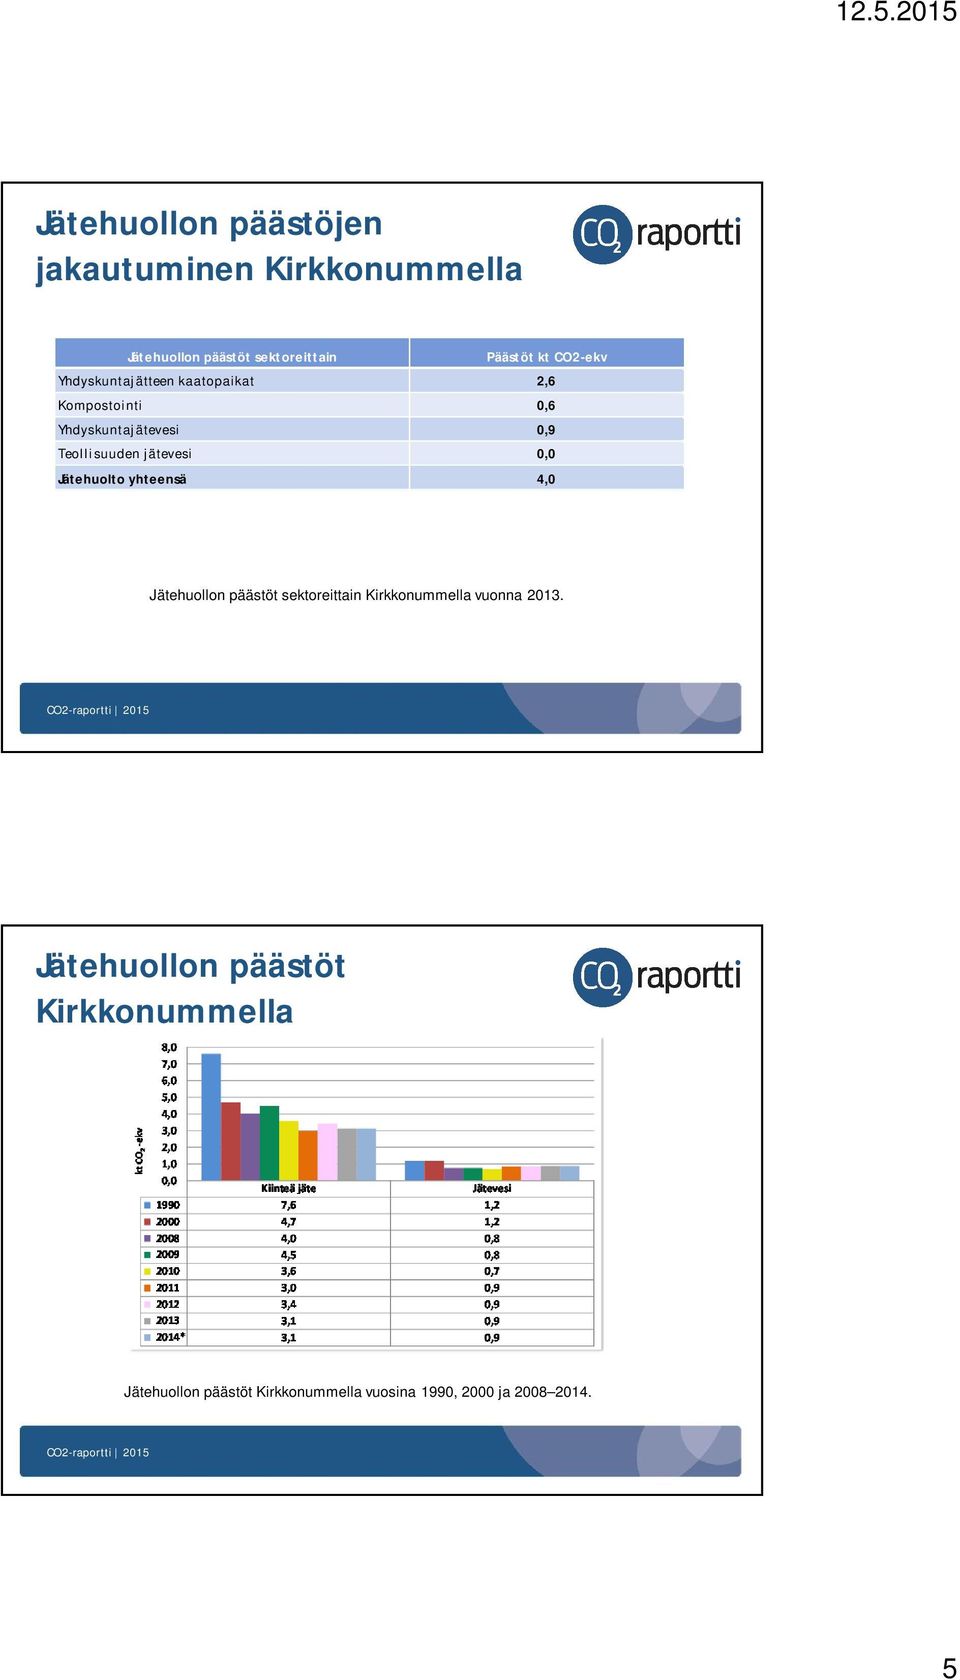 jätevesi 0,0 Jätehuolto yhteensä 4,0 Jätehuollon päästöt sektoreittain Kirkkonummella vuonna 2013.